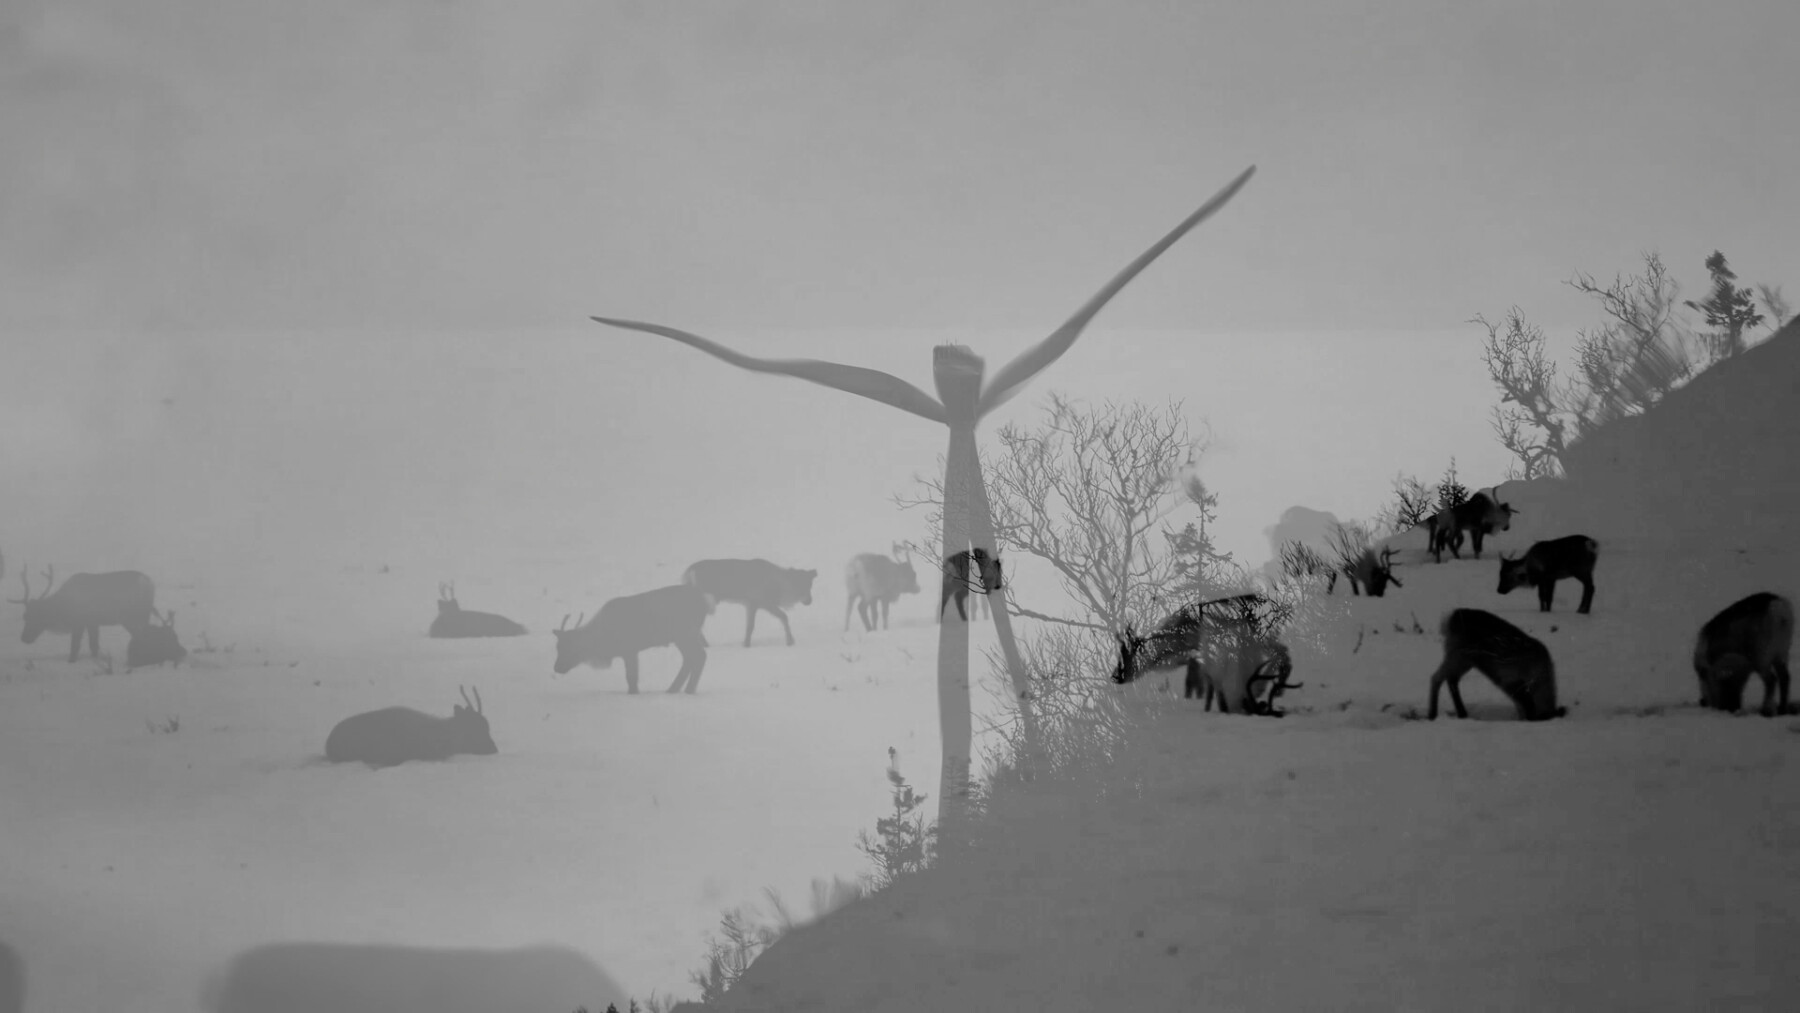 On voit deux images en noir et blanc superposées : l'une représente des rennes en train de brouter en pleine nature, tandis que l'autre montre une éolienne. 